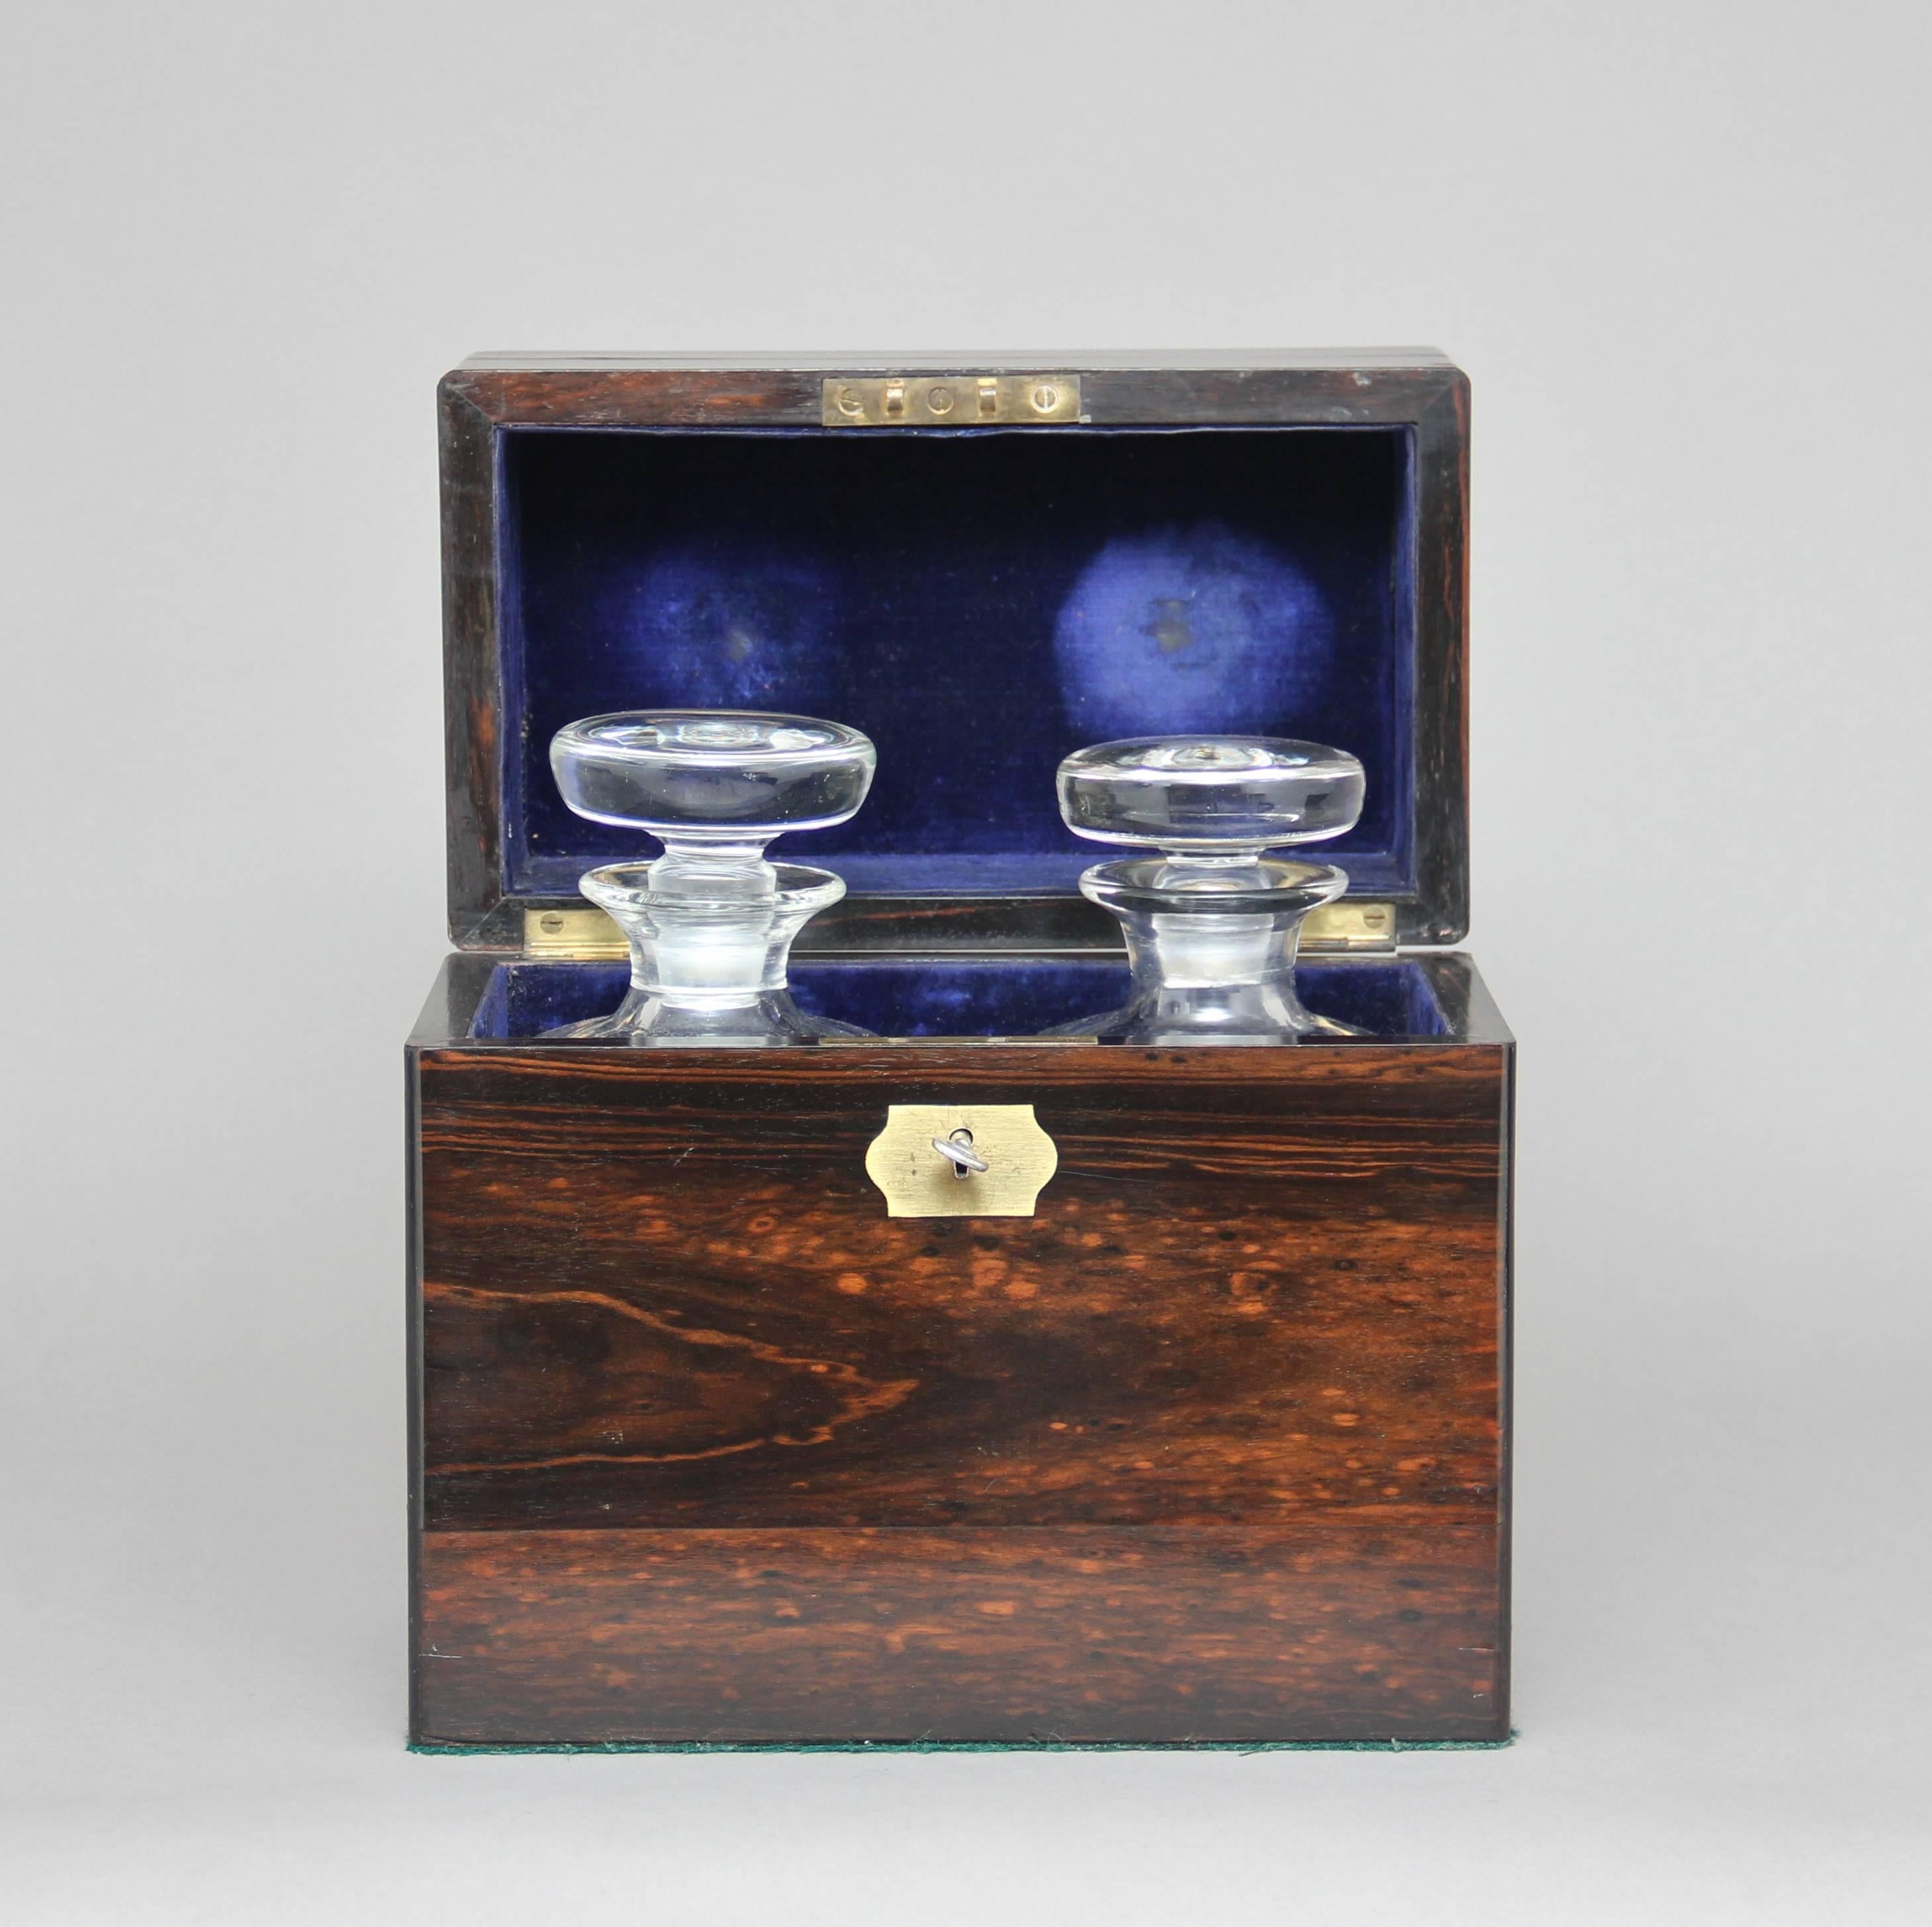 Une belle boîte à décanter de qualité du 19ème siècle en coromandel avec une poignée de transport en laiton encastrée sur le dessus, un écusson en laiton sur le devant et une clé pour la serrure, la boîte contient deux décanteurs en verre qui sont